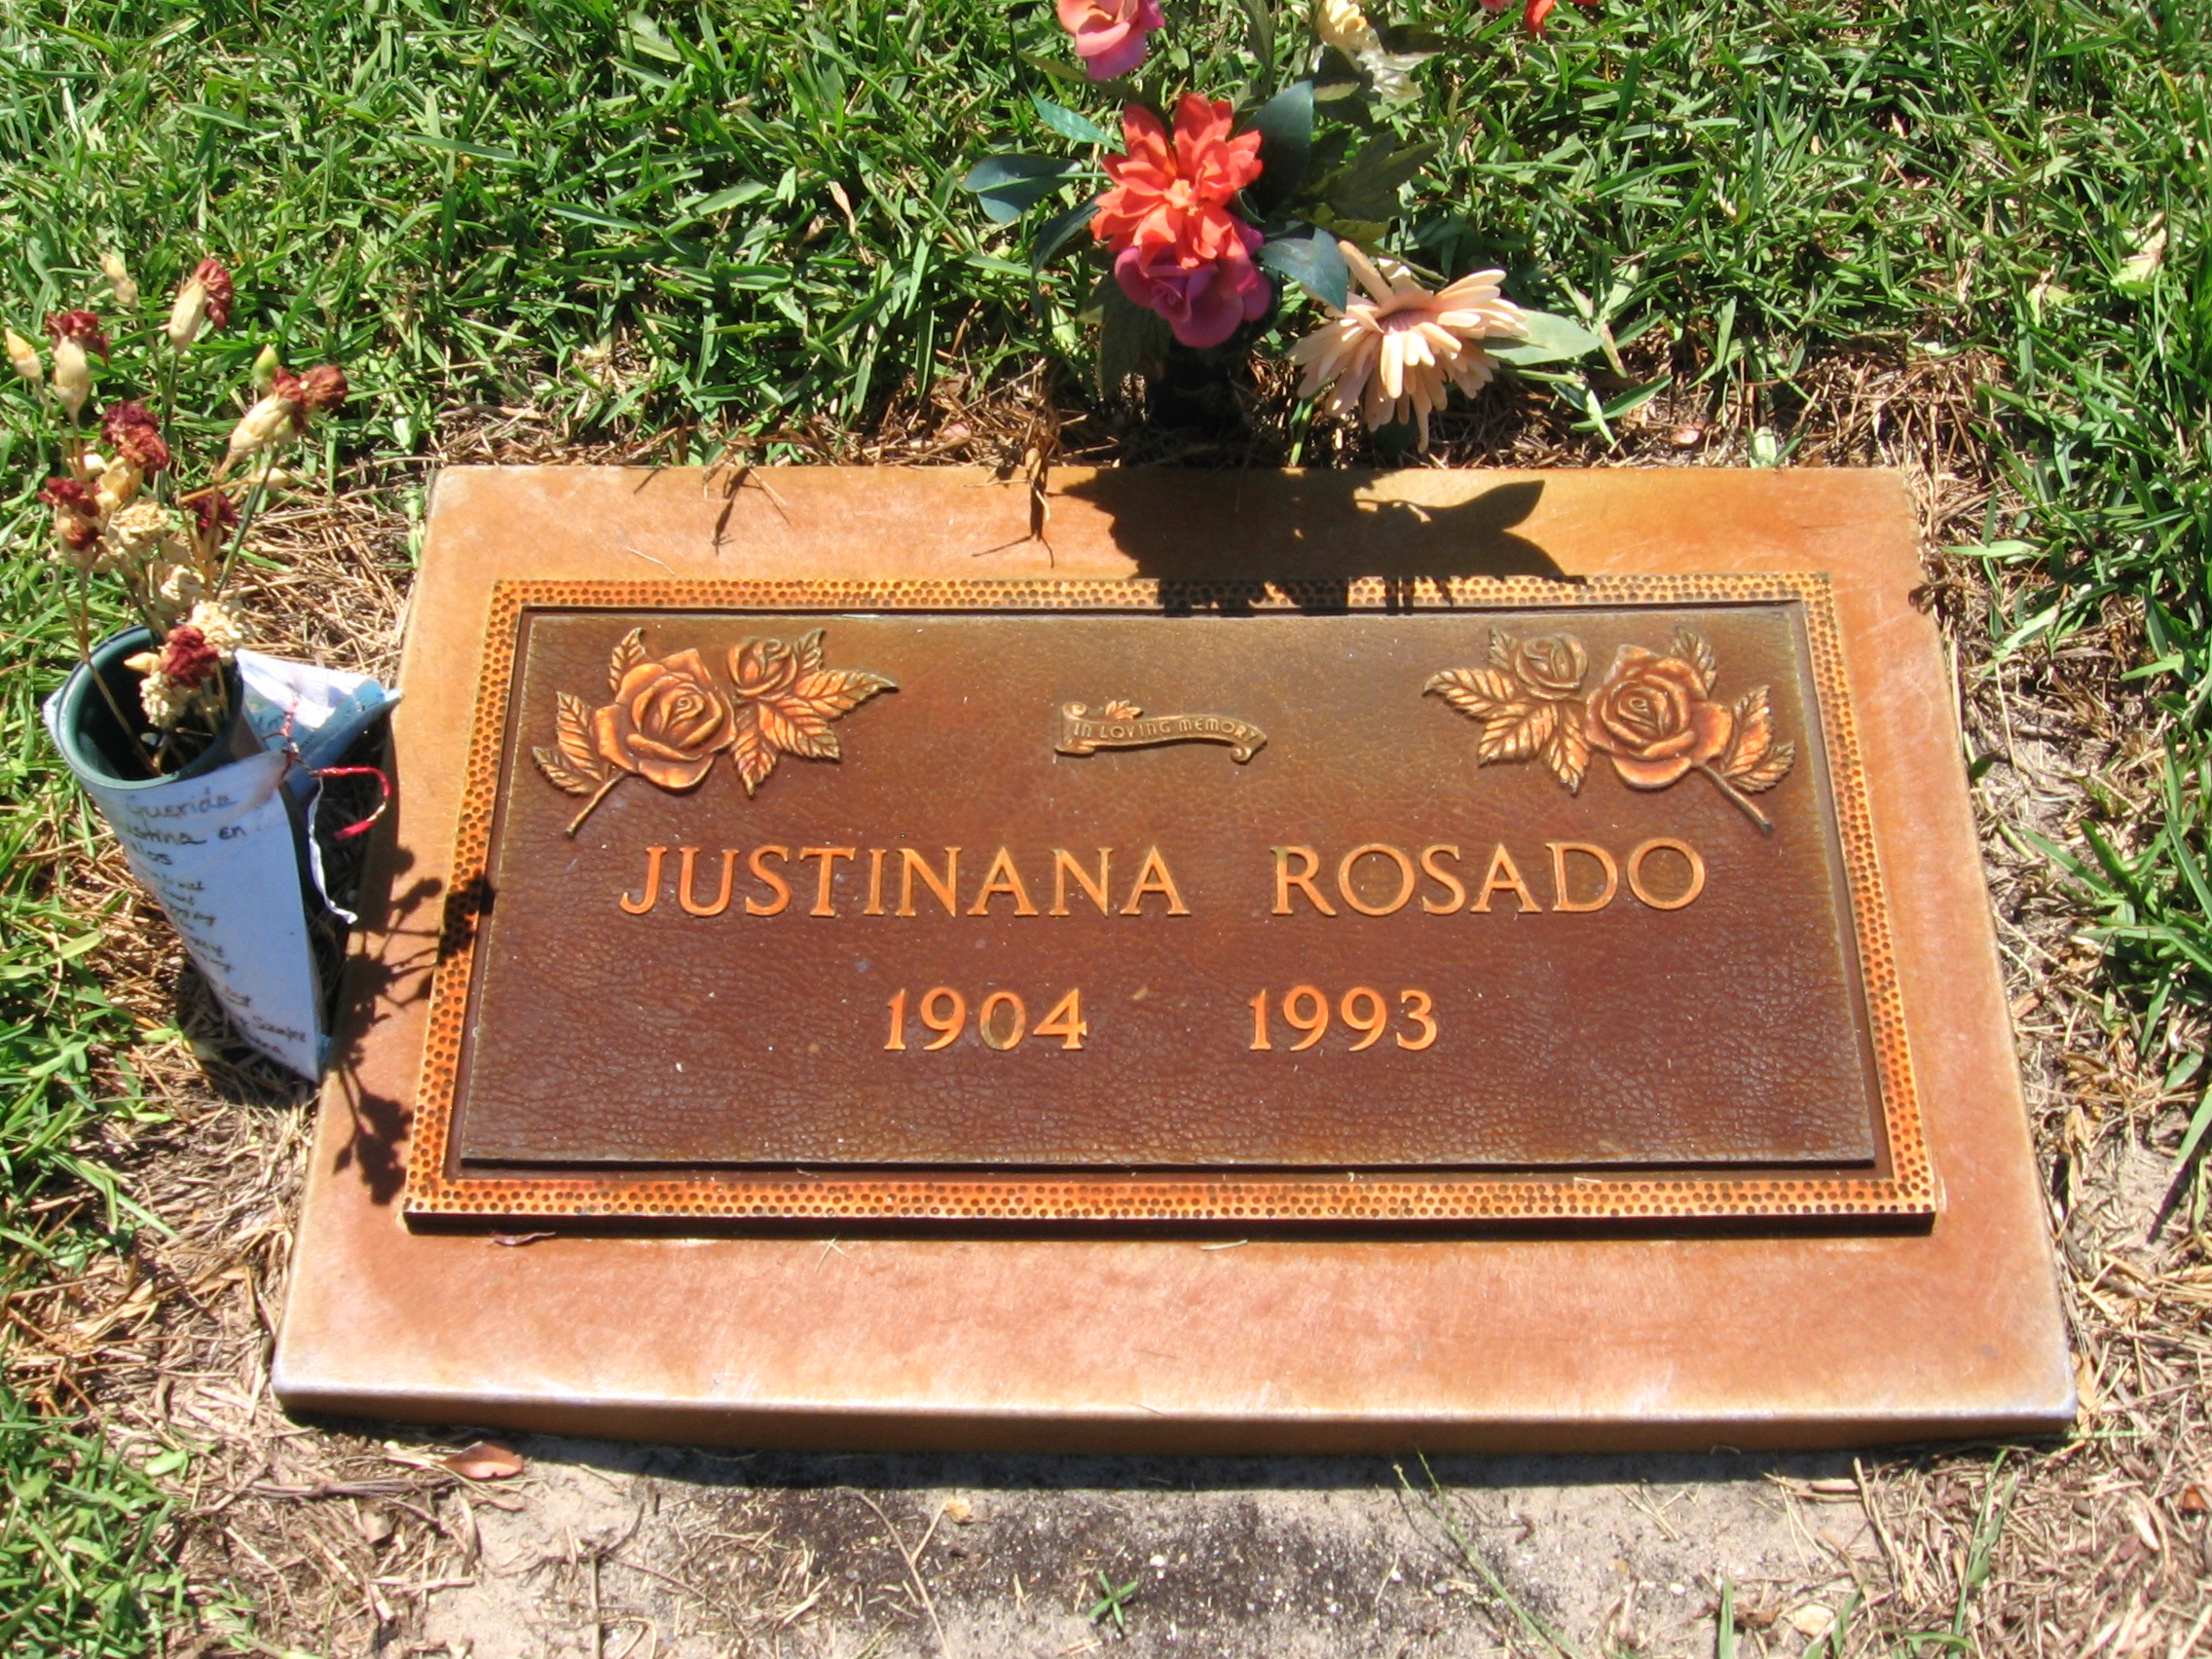 Justinana Rosado